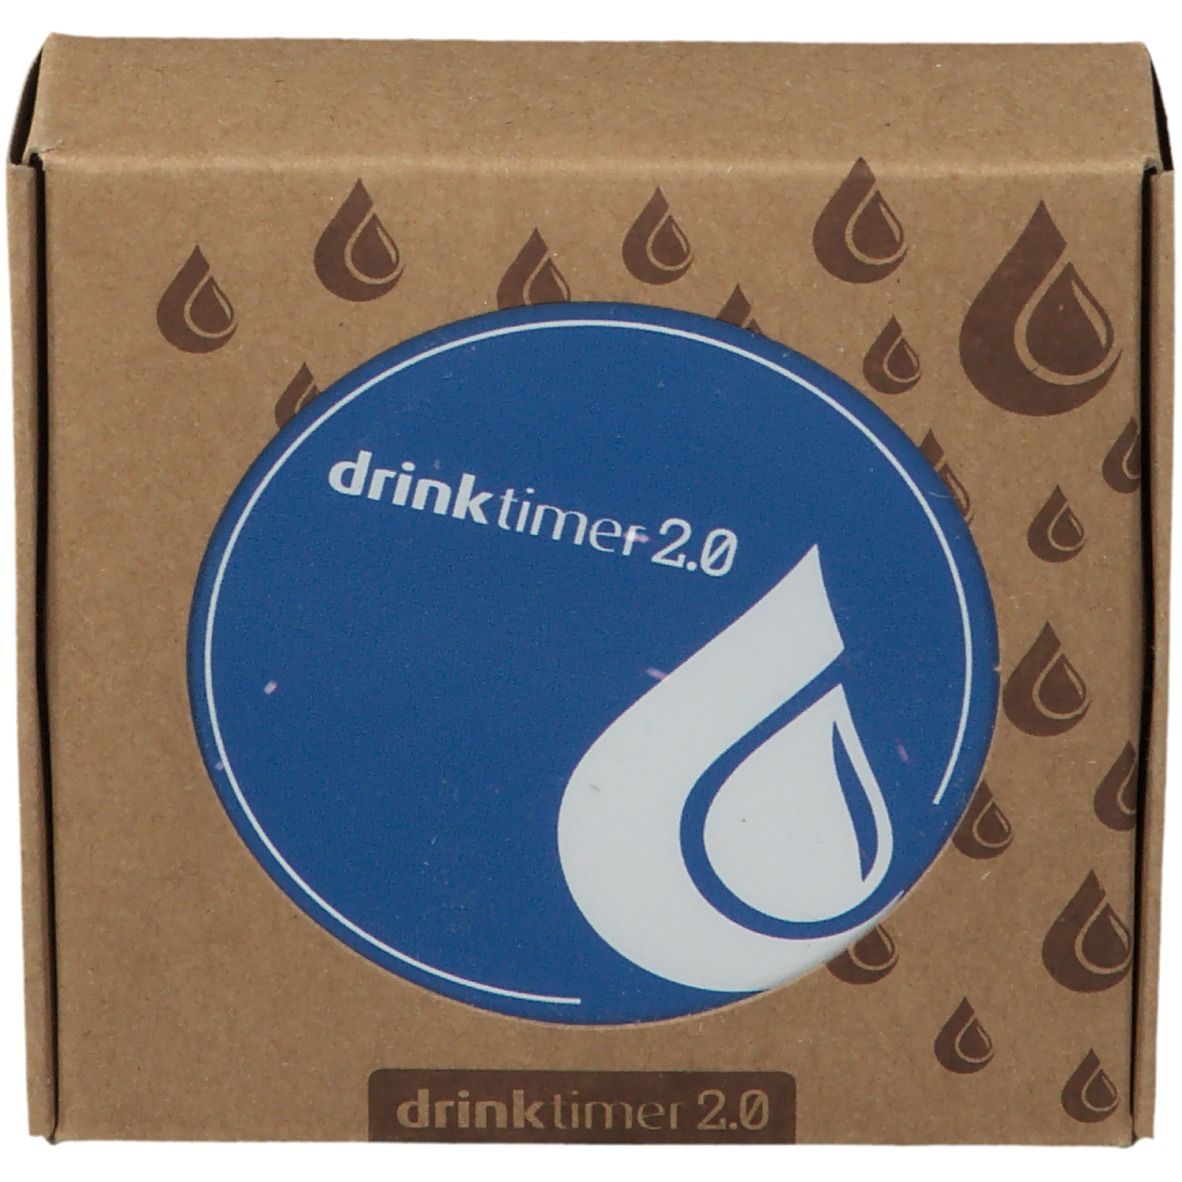 Drinktimer 2.0